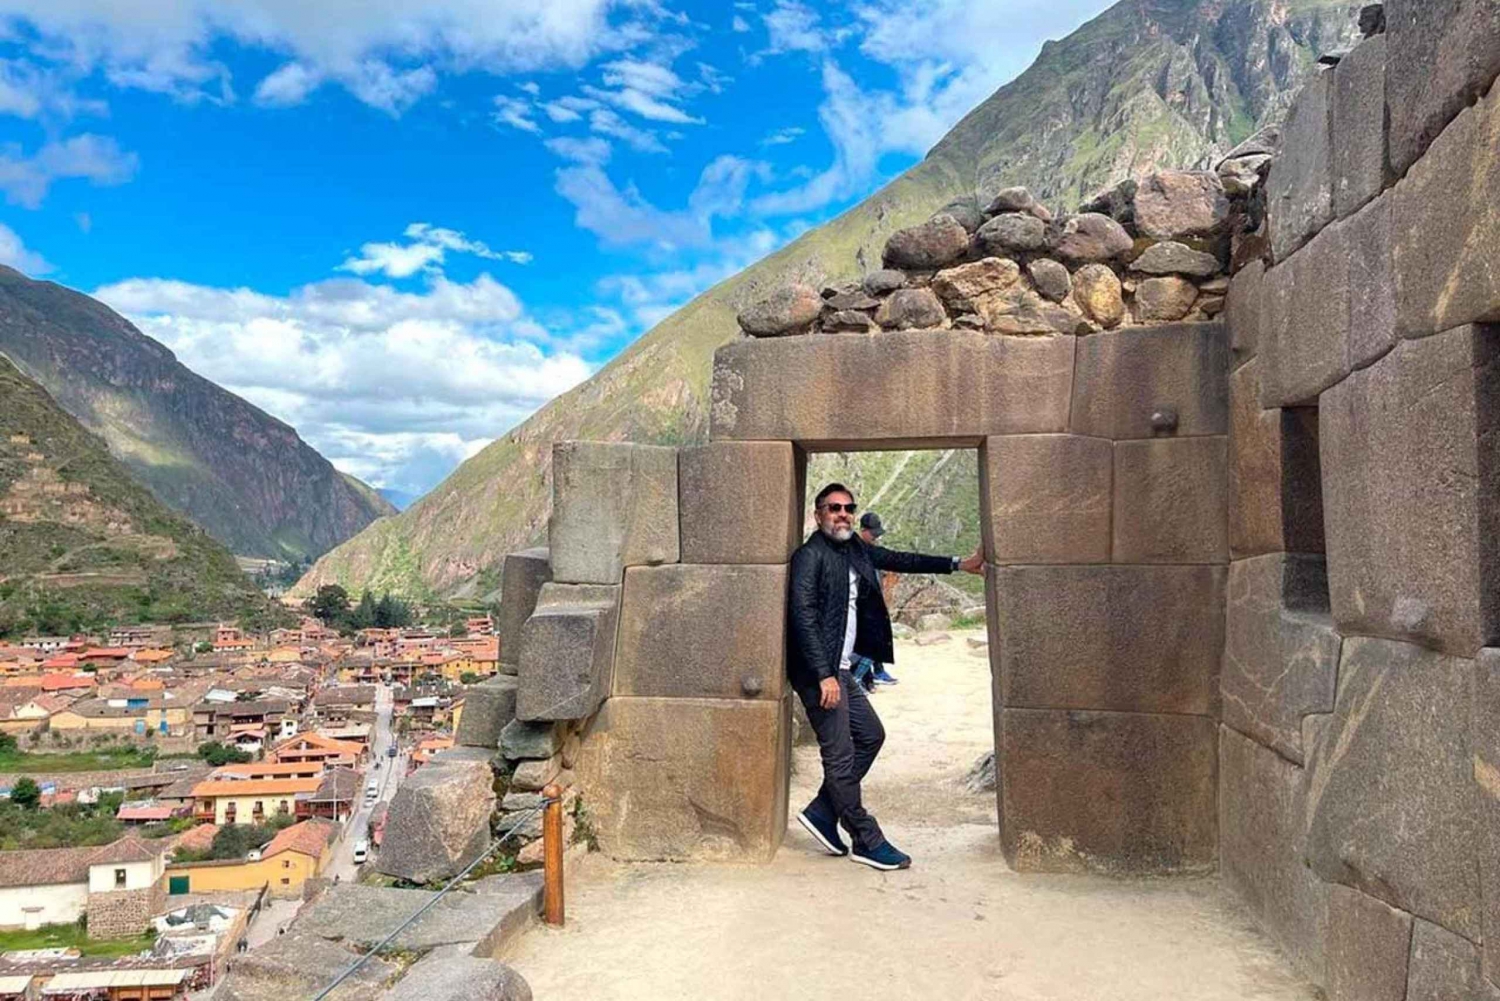 Retki Inkojen pyhään laaksoon